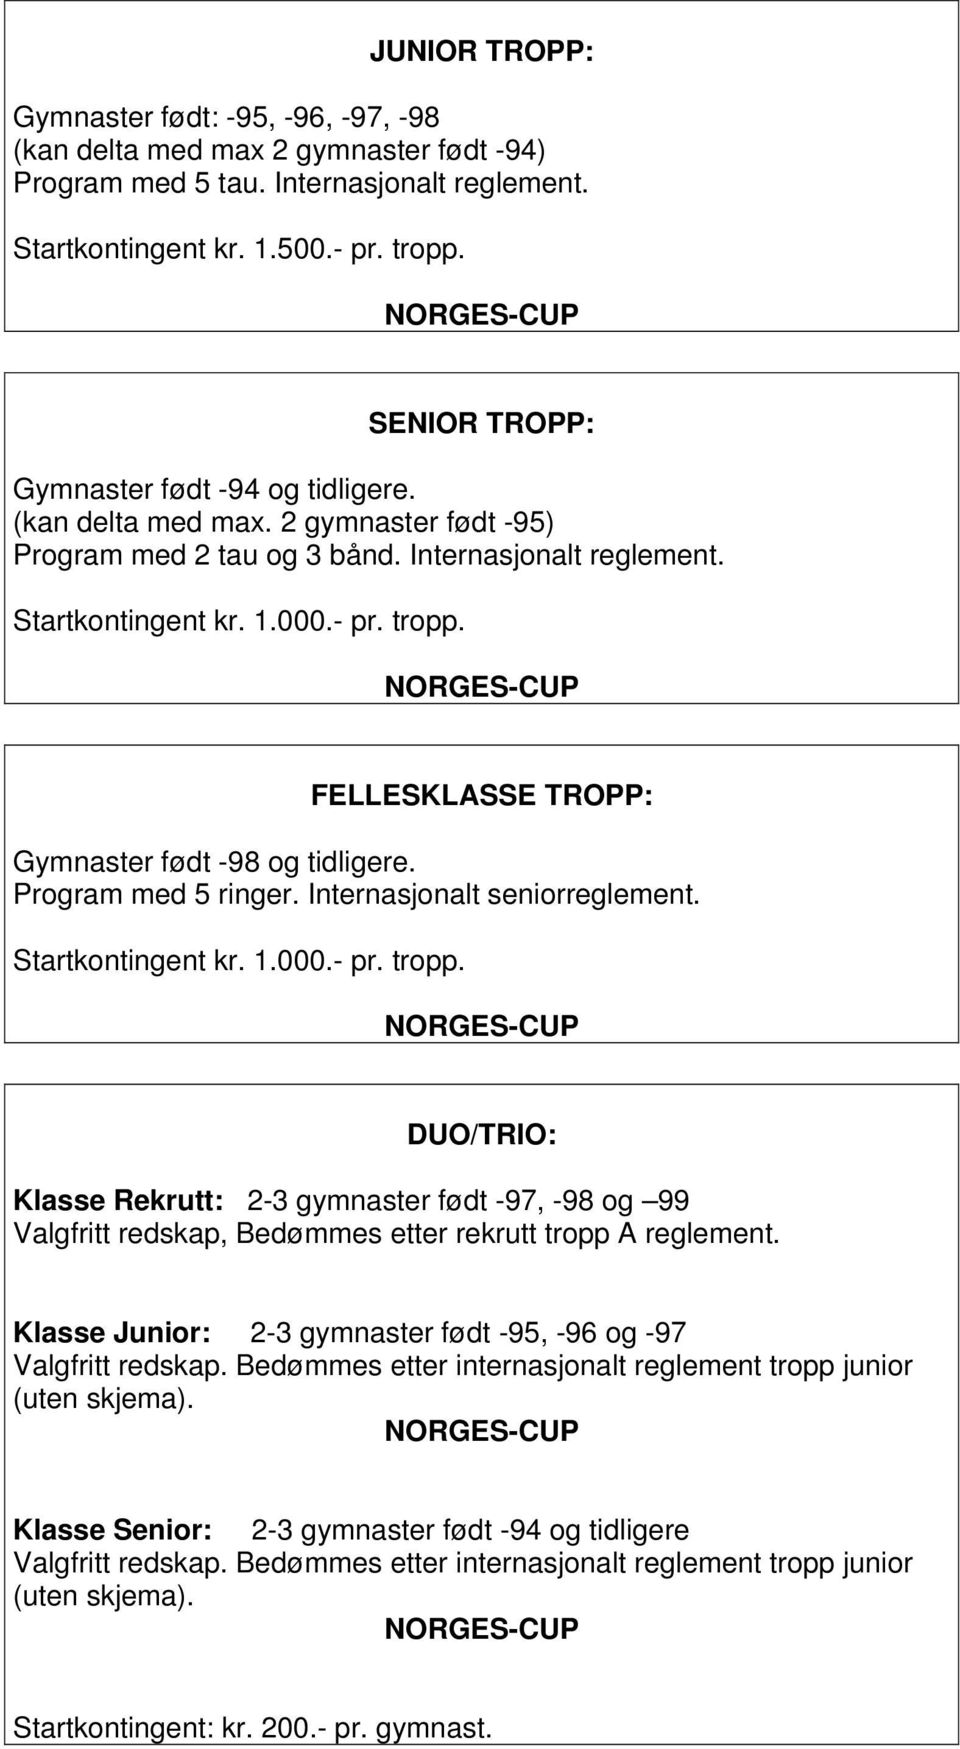 FELLESKLASSE TROPP: Gymnaster født -98 og tidligere. Program med 5 ringer. Internasjonalt seniorreglement. Startkontingent kr. 1.000.- pr. tropp.